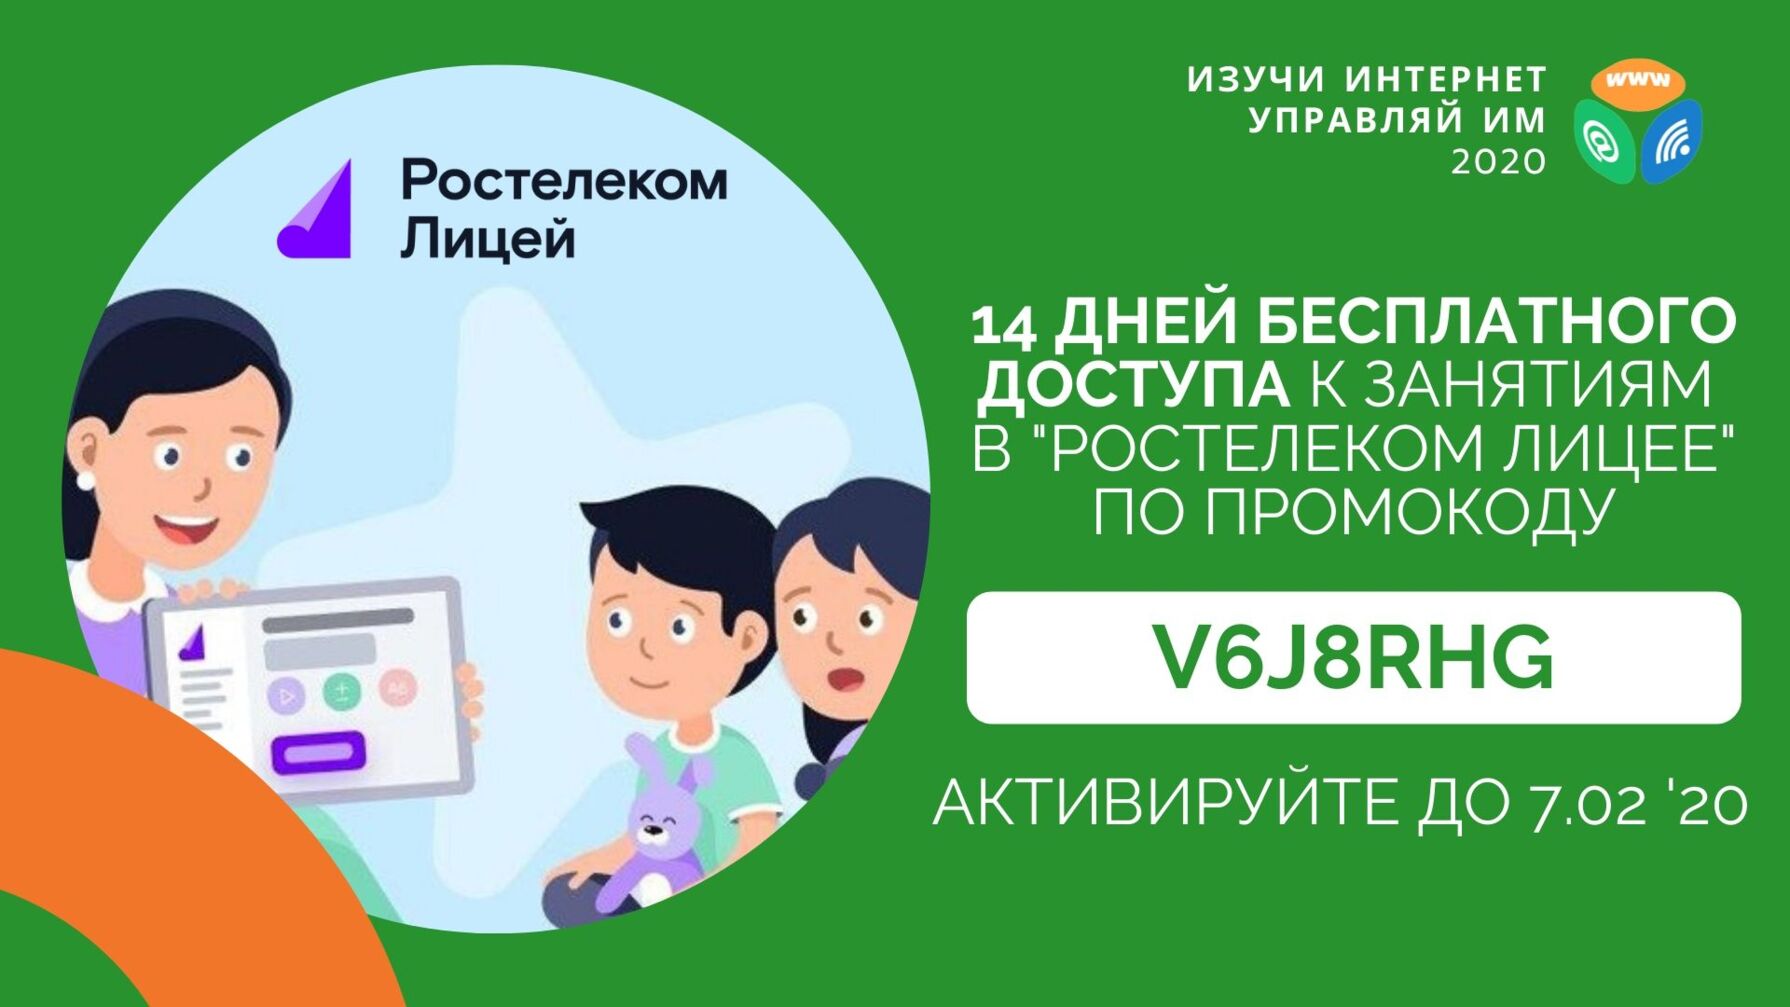 Белгородские школьники могут две недели бесплатно заниматься в «Ростелеком. Лицее»*